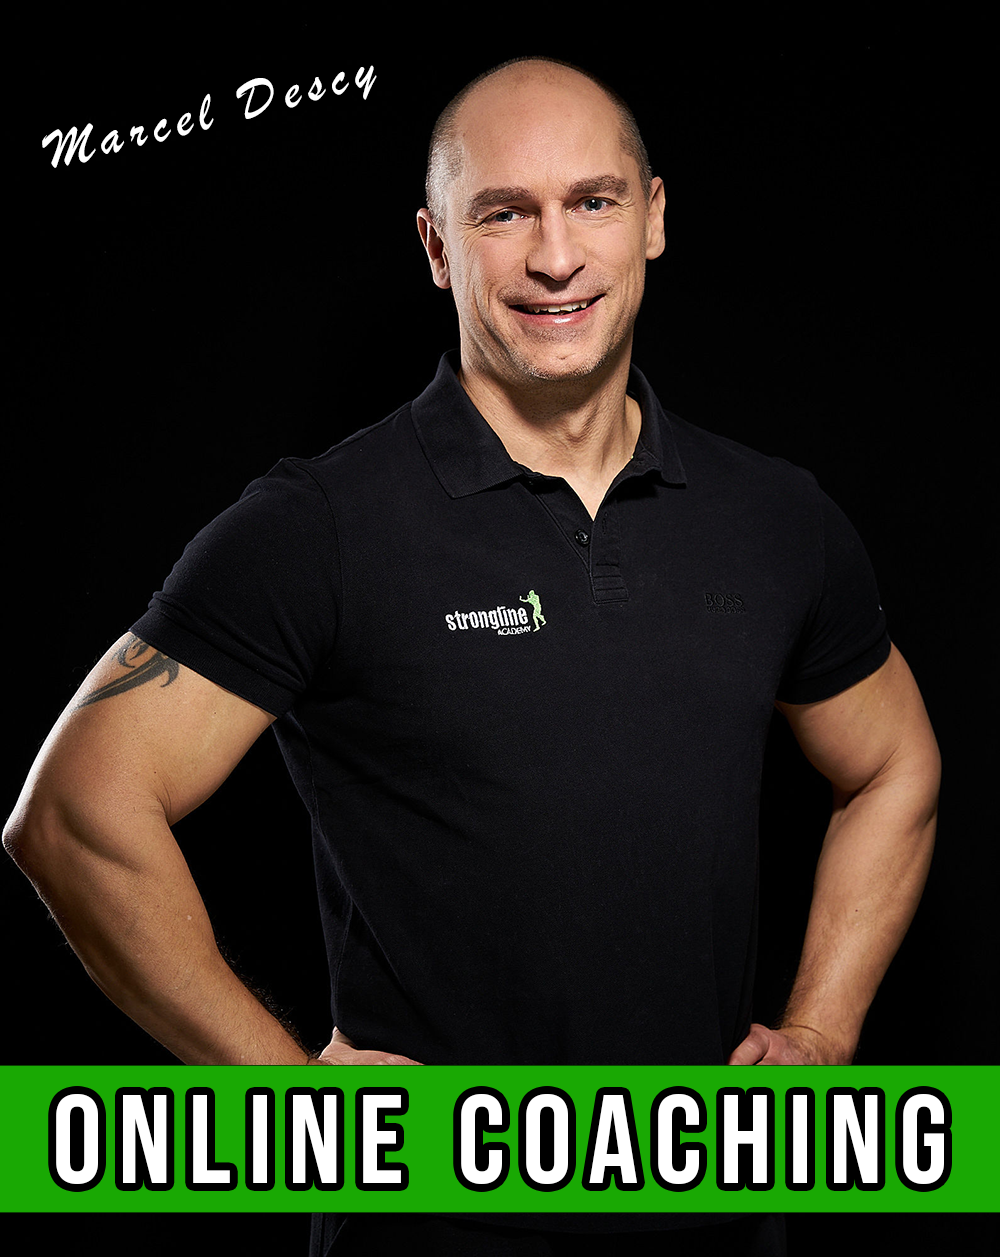 Marcel Descy - Online Coaching